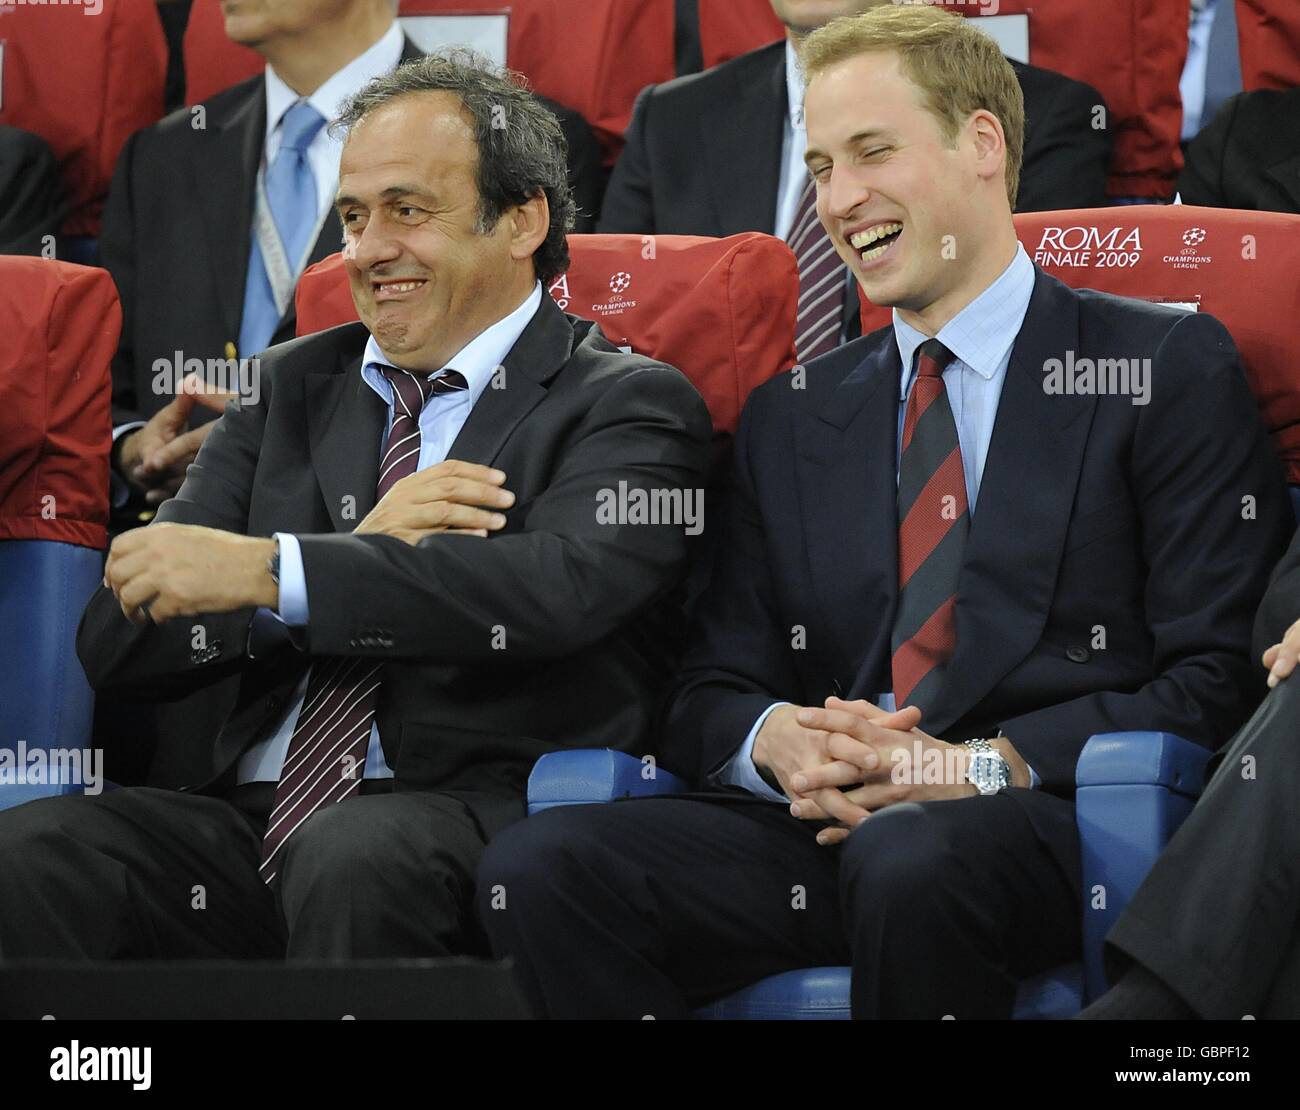 Le président de l'Association du football Prince William (à droite) partage une blague avec le président de l'UEFA Michel Platini (à gauche) dans les tribunes. Banque D'Images